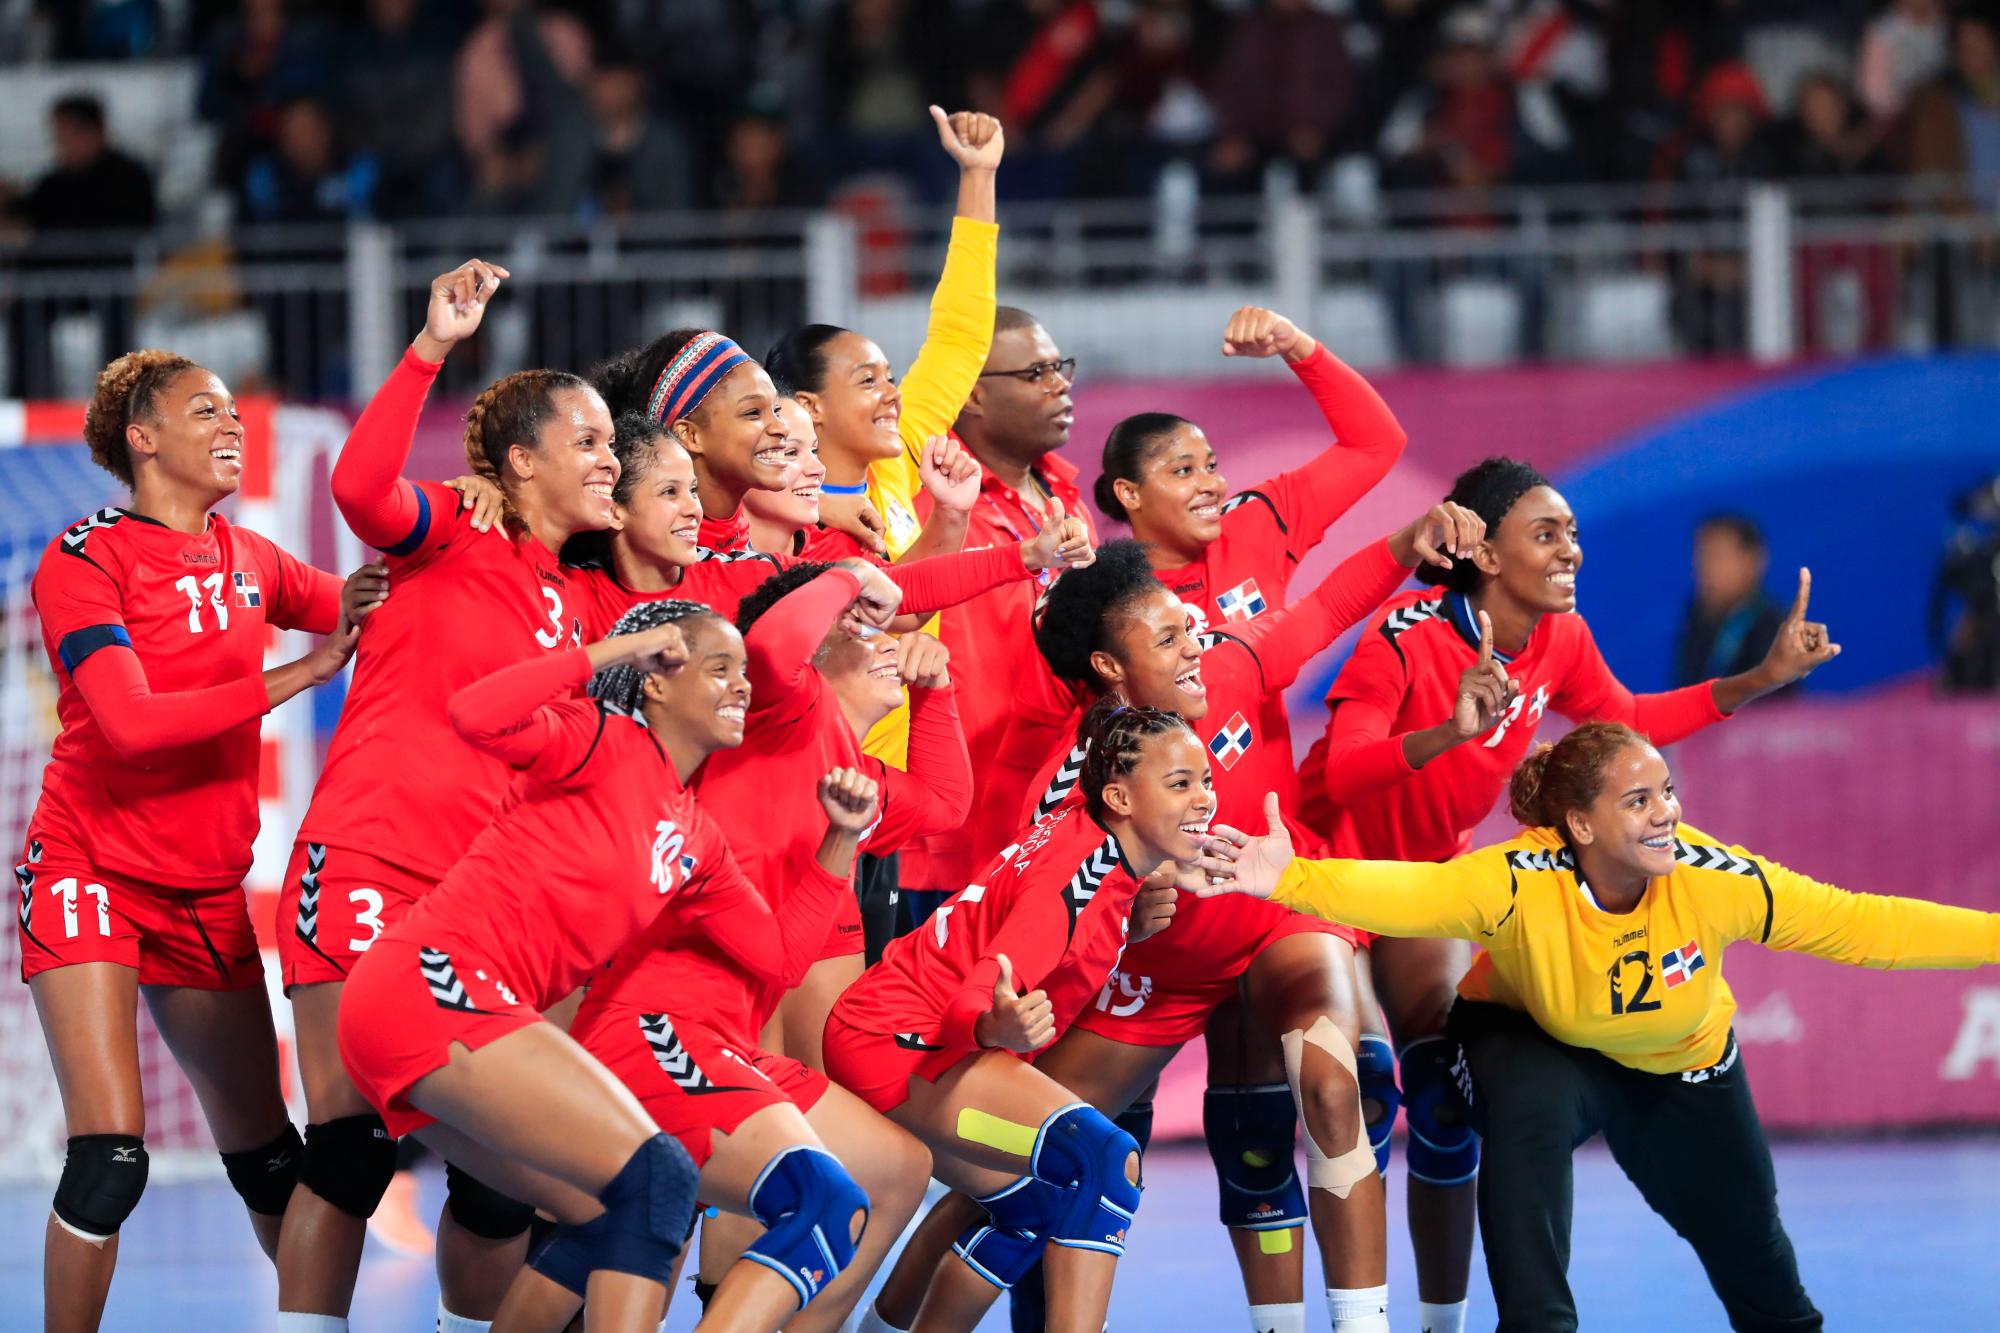 El equipo de balonmano de República Dominicana celebra la victoria contra Perú en Villa Deportiva Nacional-Videna en los Juegos Panamericanos Lima 2019